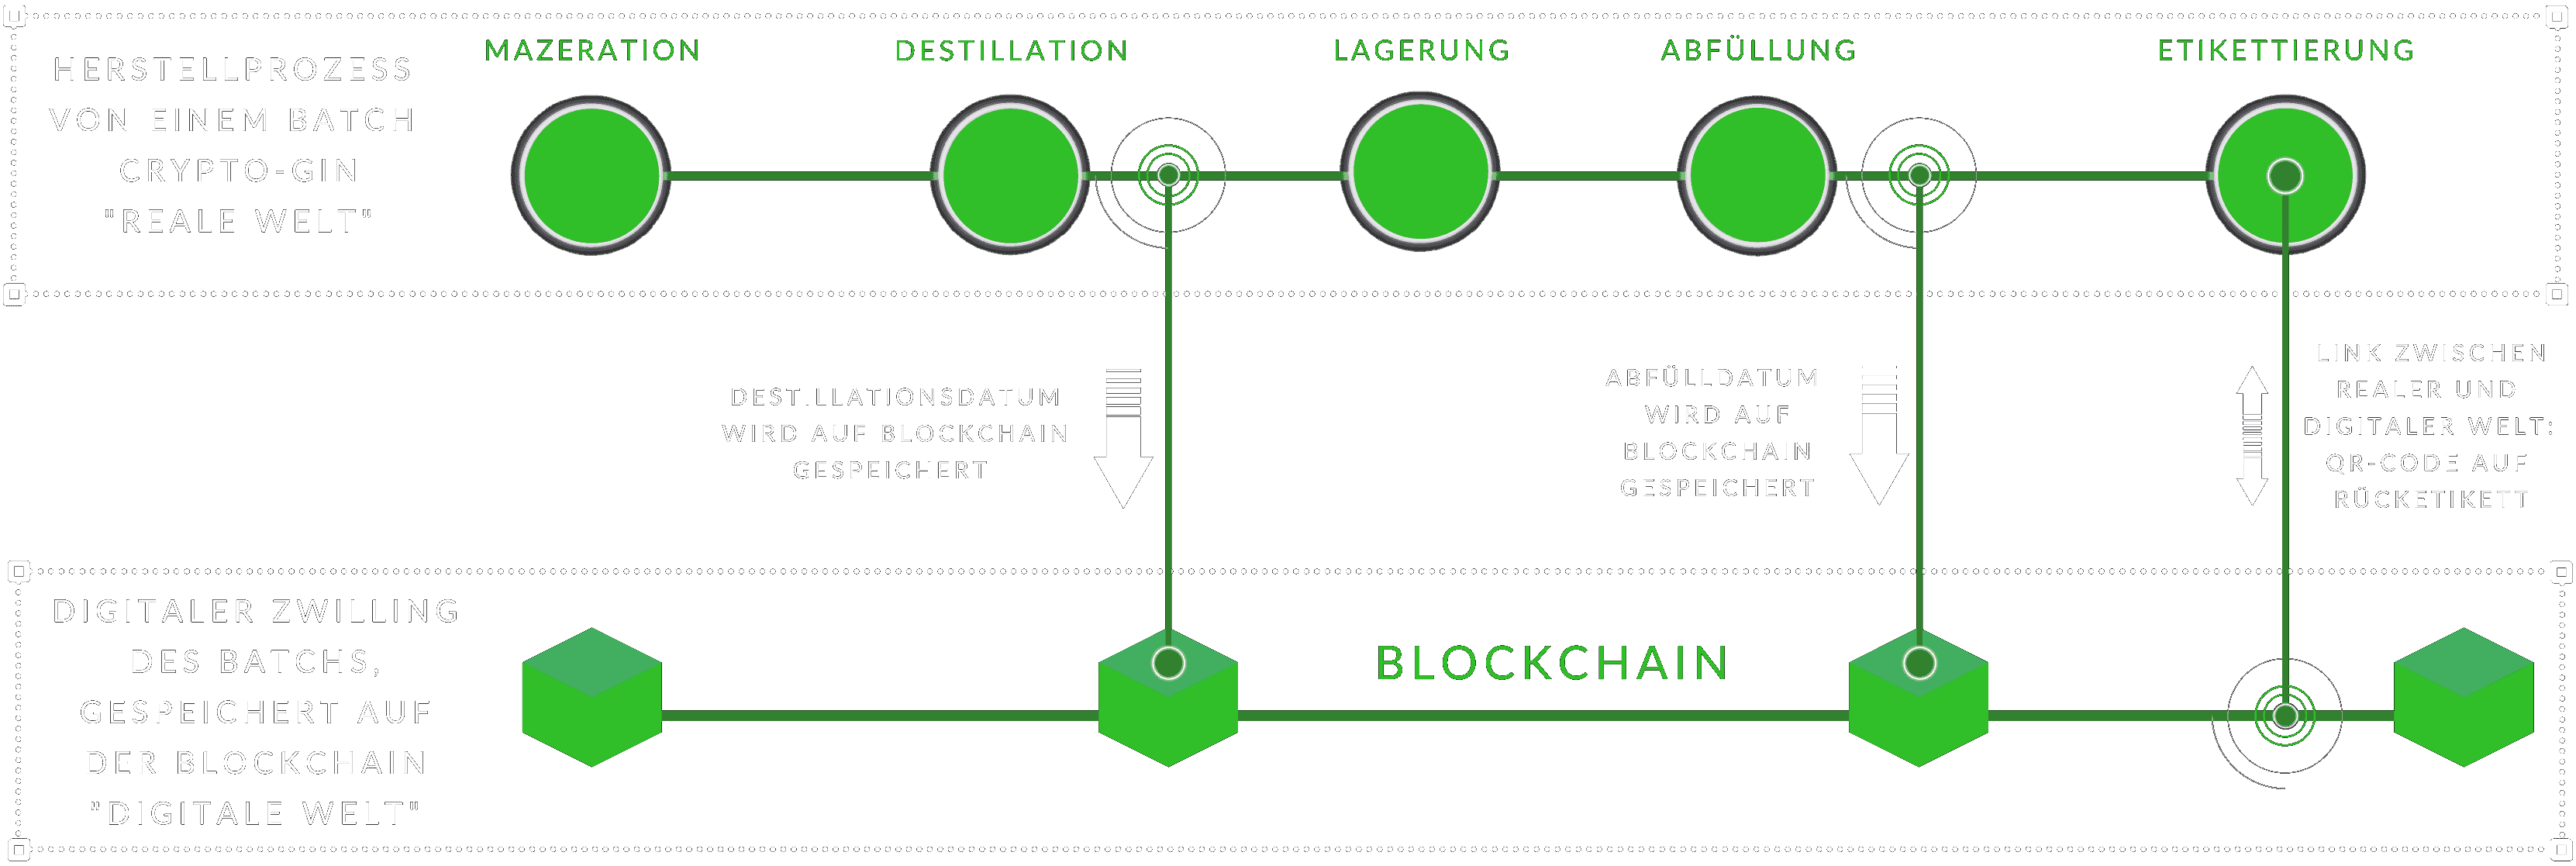 Bild, erklärung Crypto-Gin Digitaler Zwilling in der Blockchain